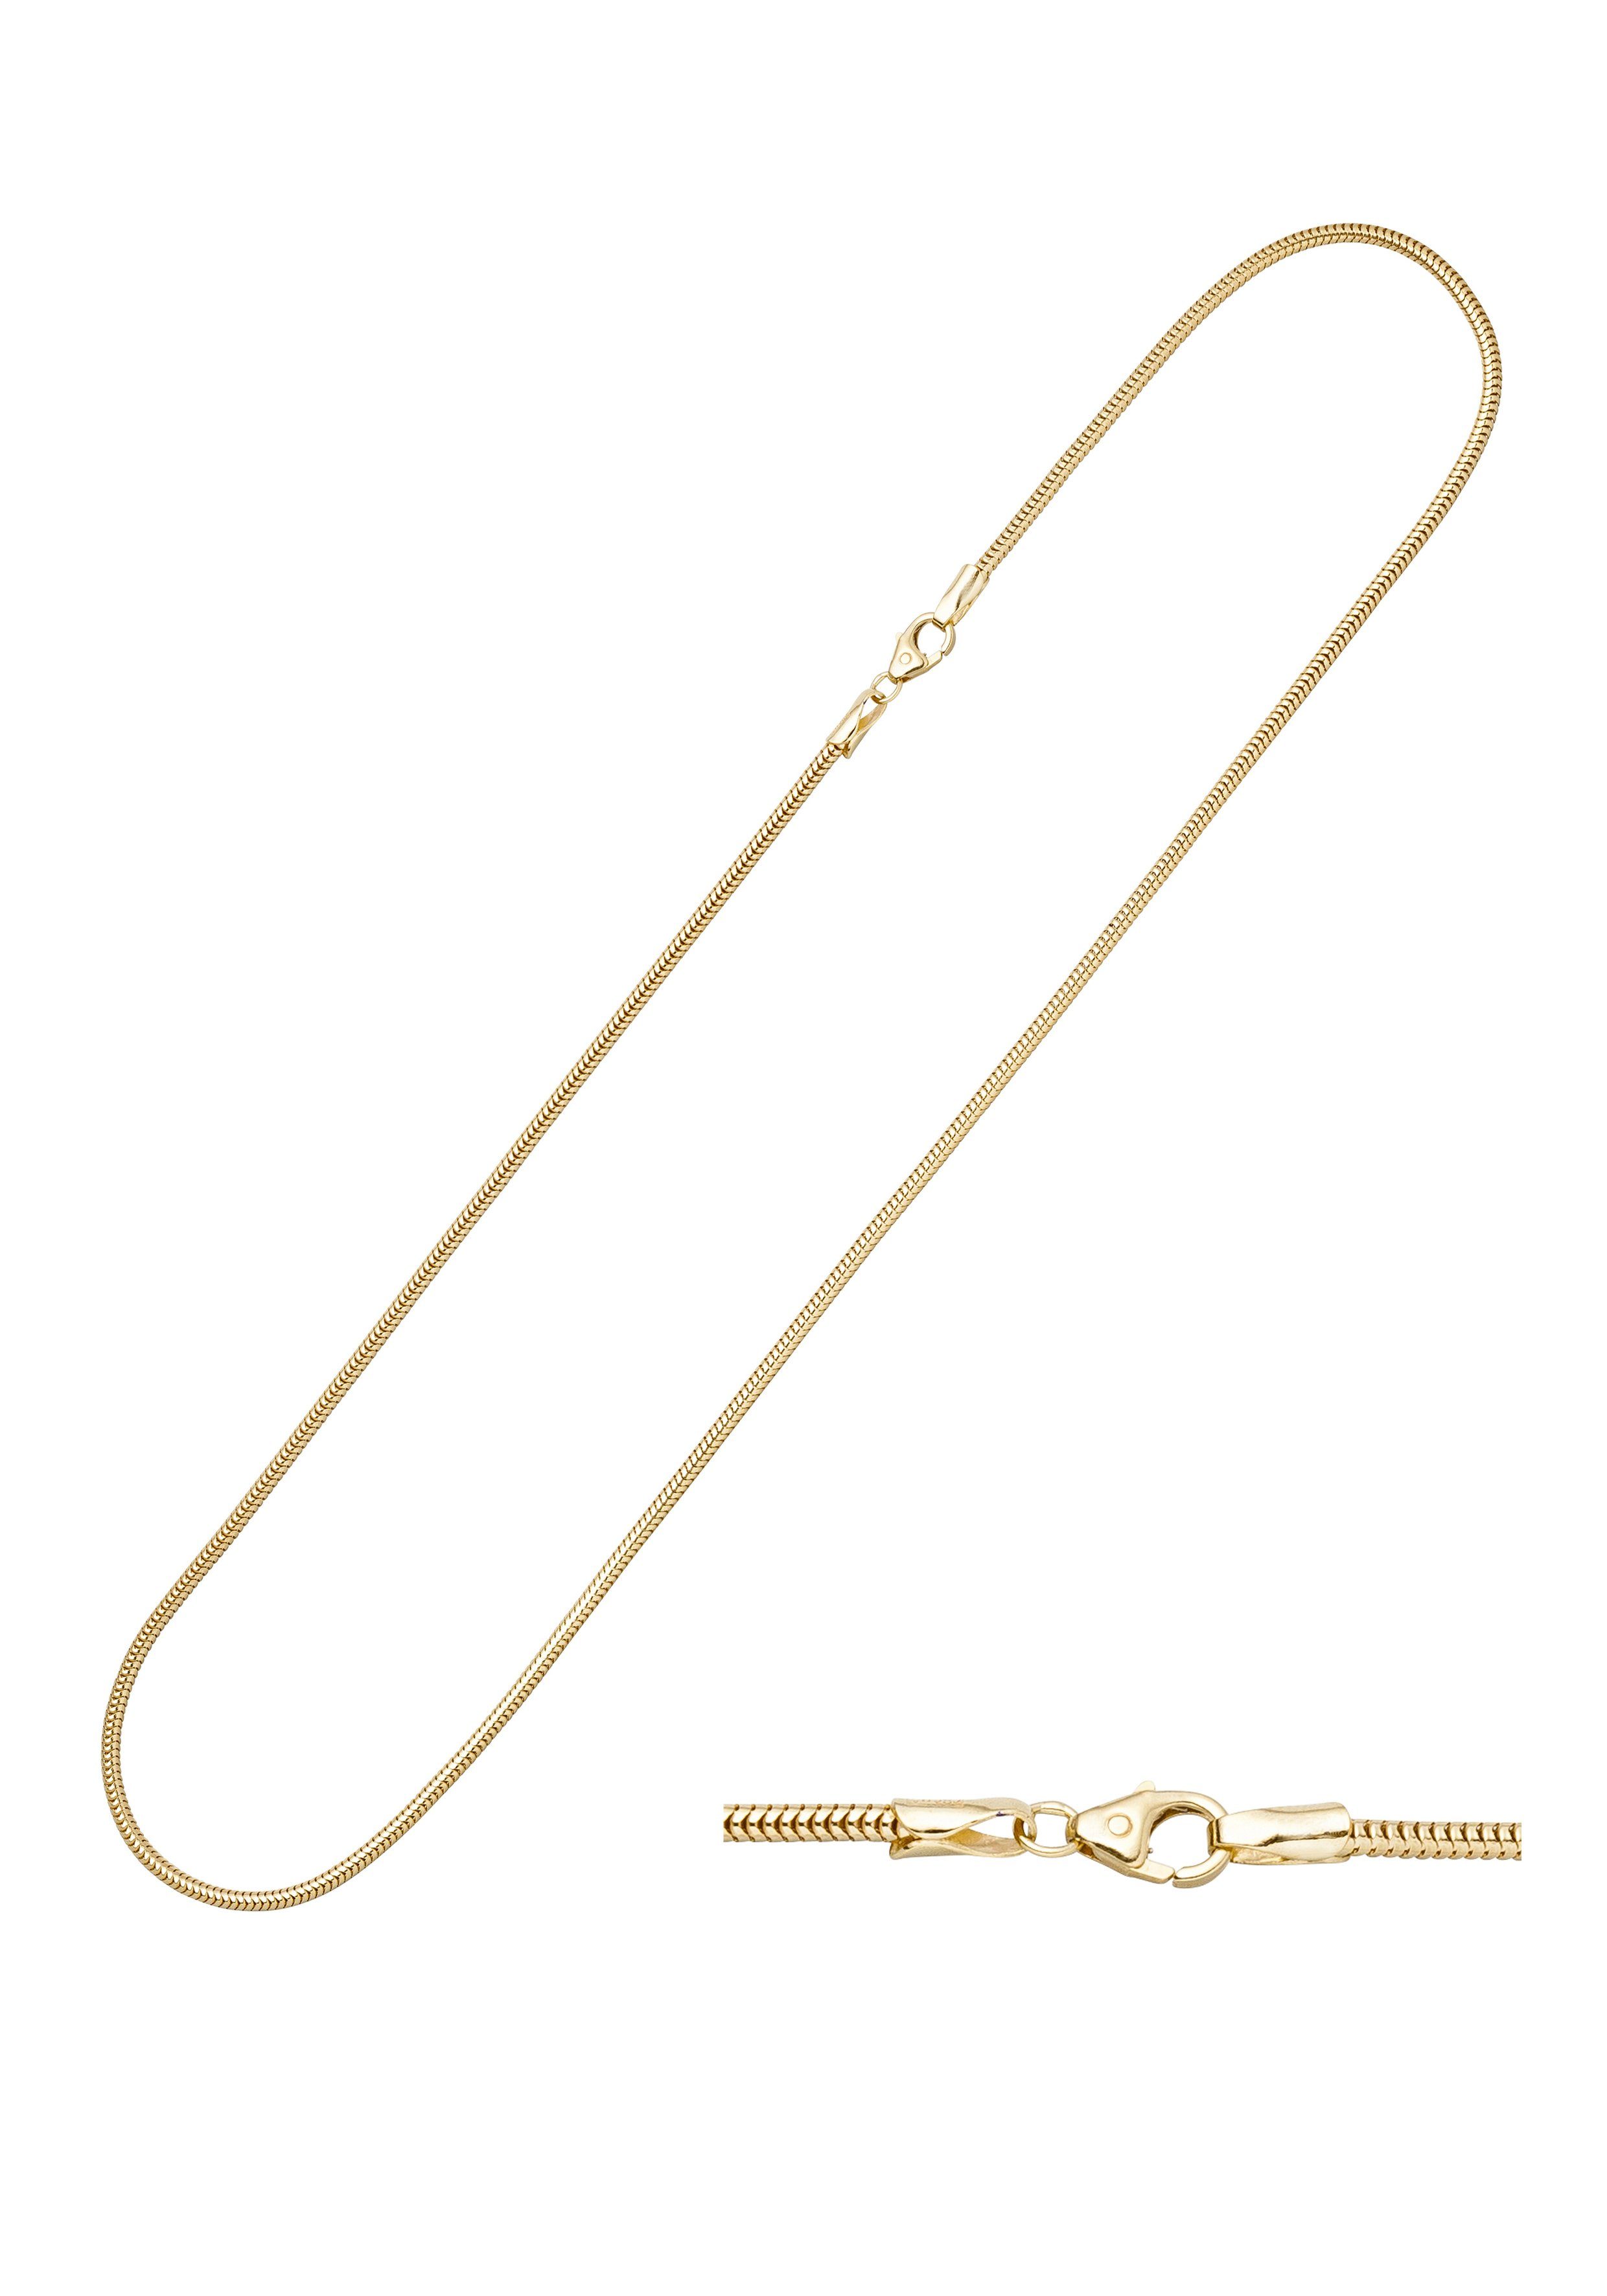 Damen Schmuck JOBO Goldkette Schlangen-Kette, 333 Gold 45 cm 2,4 mm